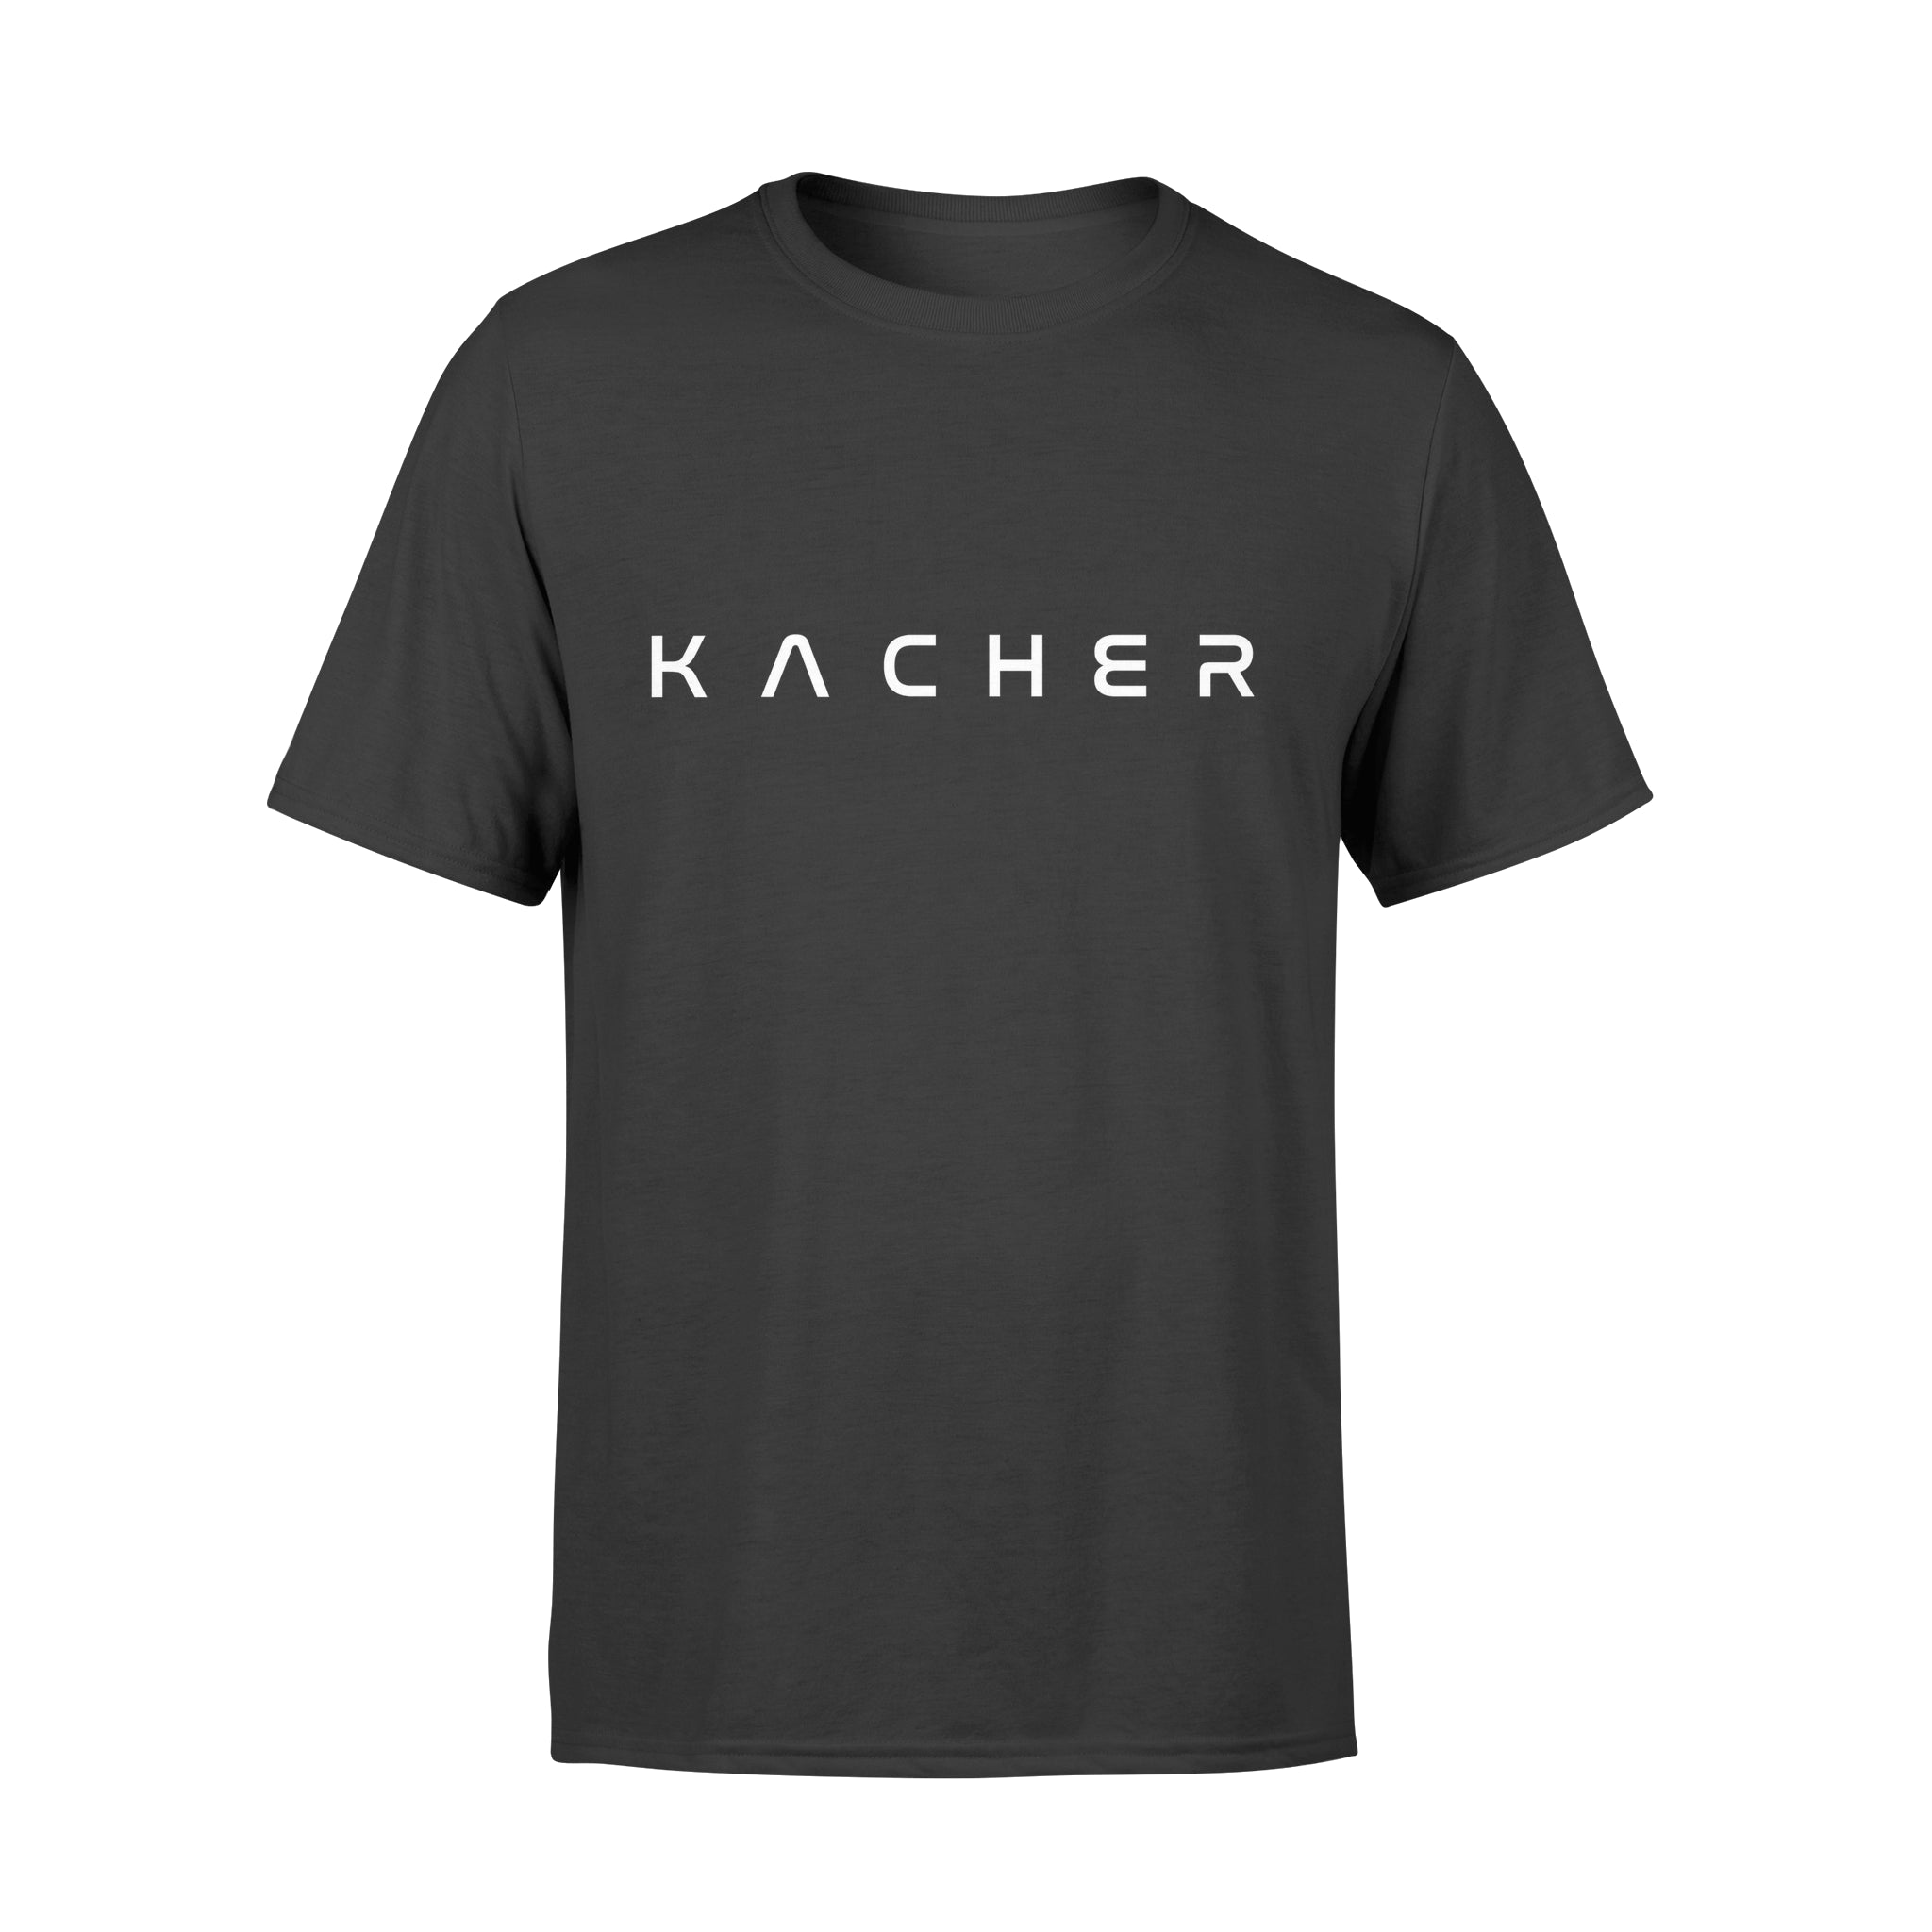 KACHER - T-shirt